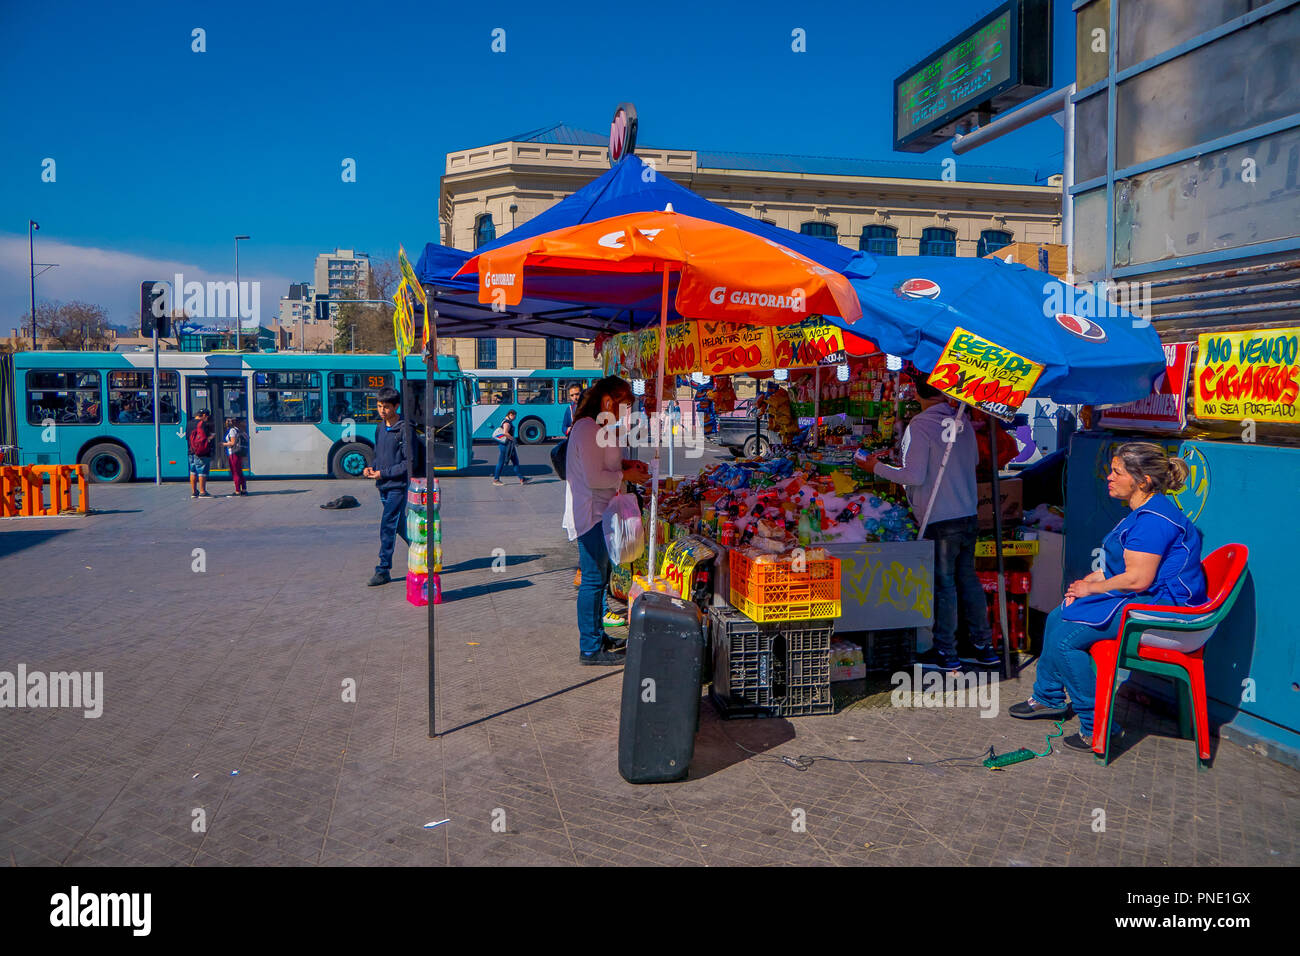 SANTIAGO, CHILE - Septiembre 13, 2018: Vista exterior de la calle mercado  con unos dulces bajo un paraguas para protegerse del intenso sol, ubicado  en el barrio Yungay en Santiago de Chile